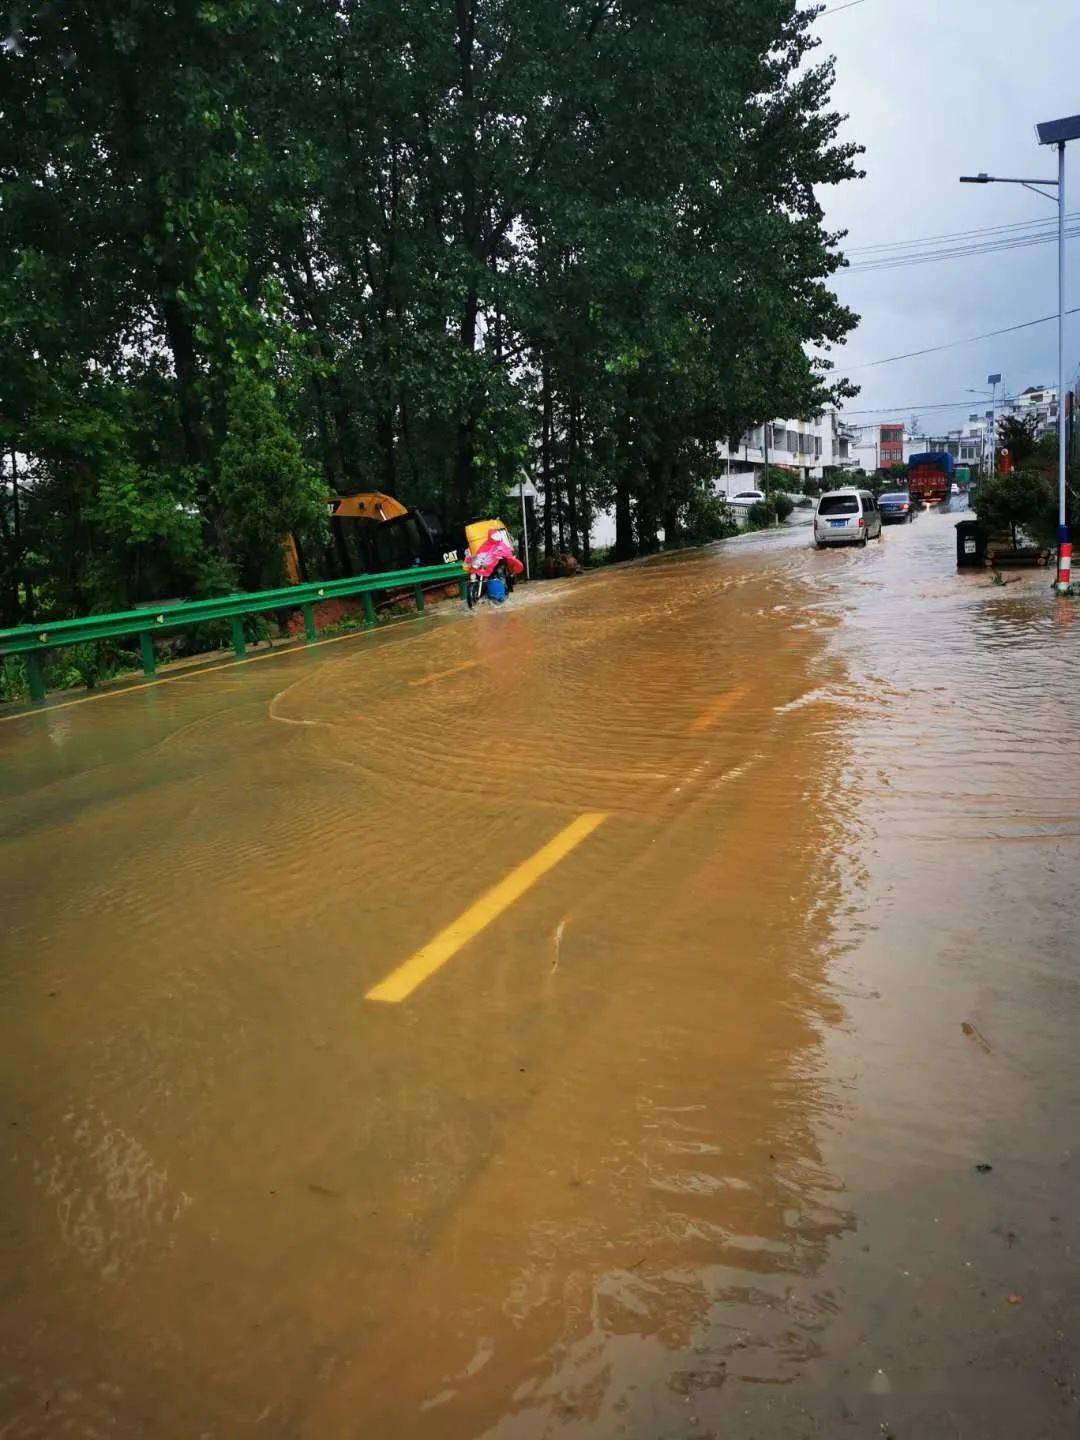 然而位于105国道凉亭段的居民及过往车辆却寸步难行,路面低洼处水差